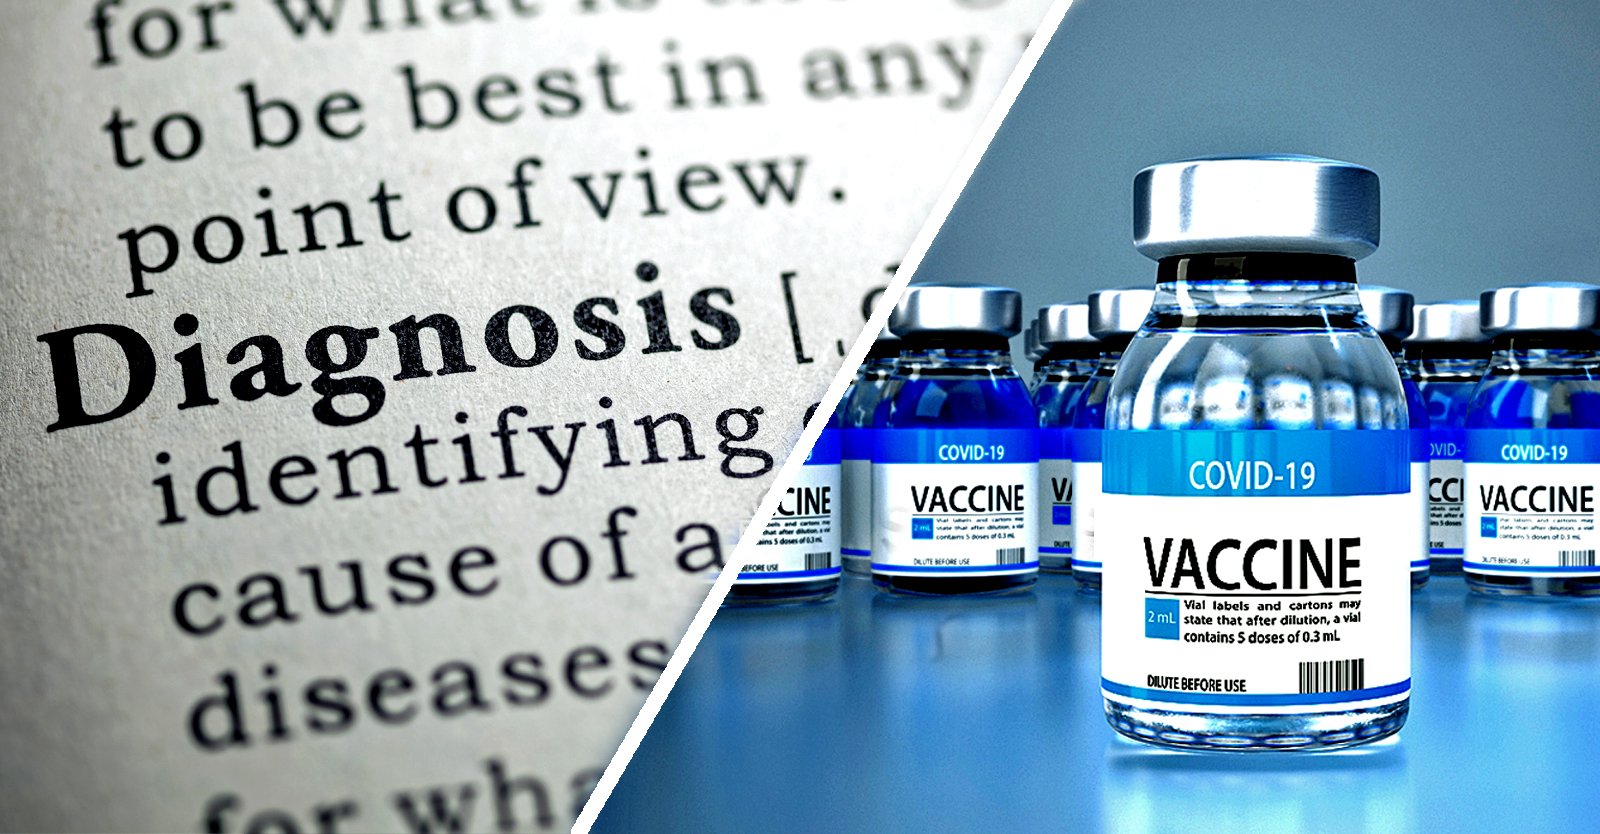 Menurut survei Zogby, 15% orang dewasa Amerika didiagnosis dengan penyakit baru setelah vaksin COVID